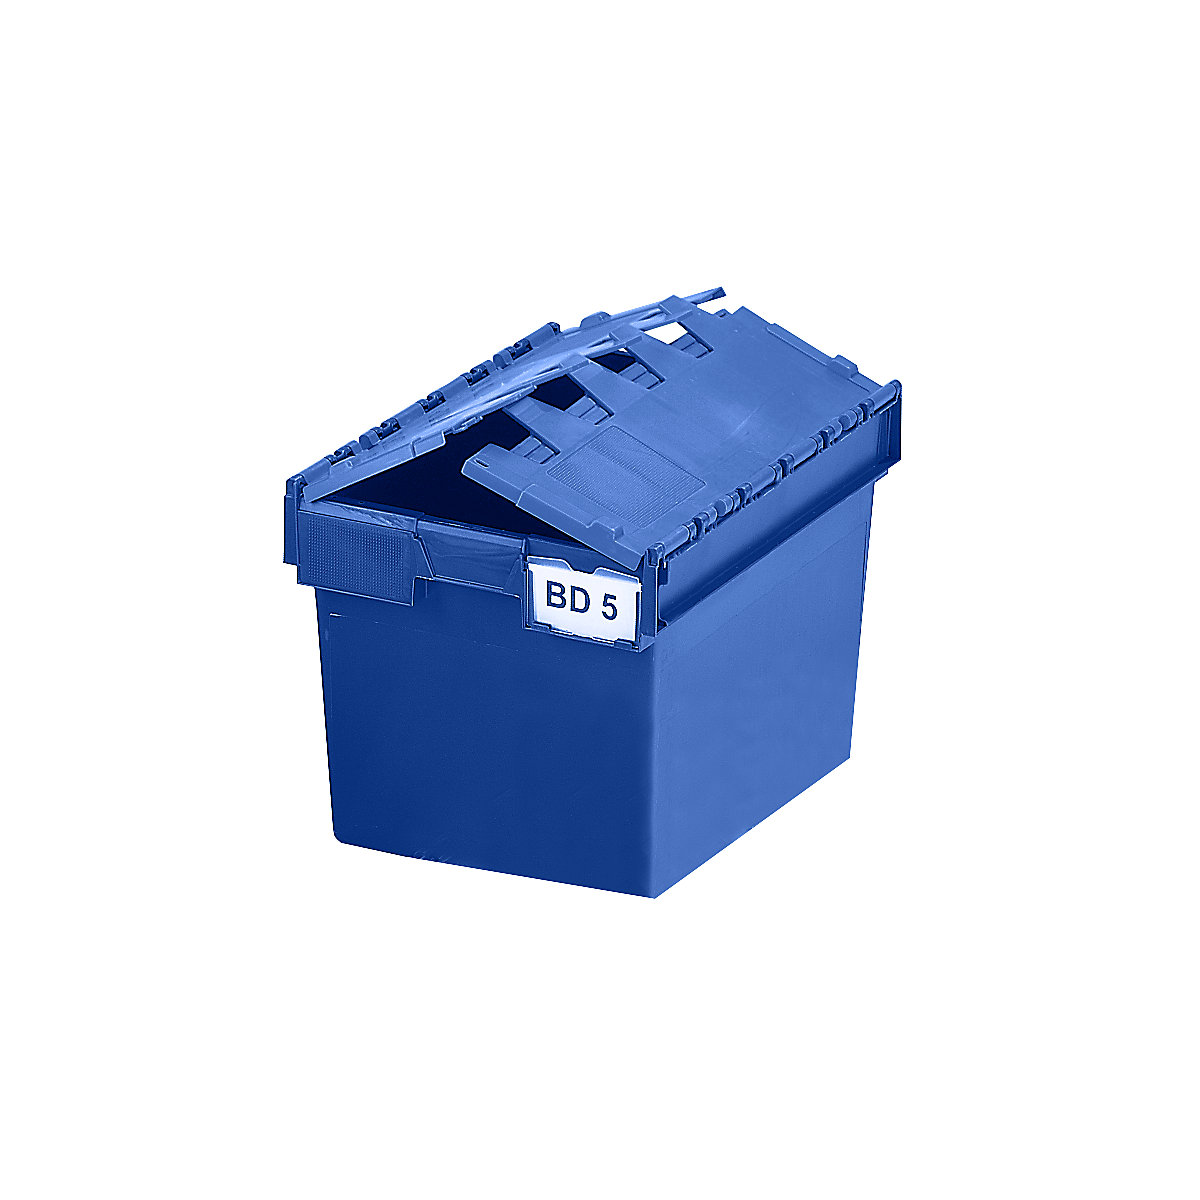 Recipiente empilhável e retornável com tampa articulada, volume 64 litros, CxLxA 600 x 400 x 365 mm, azul